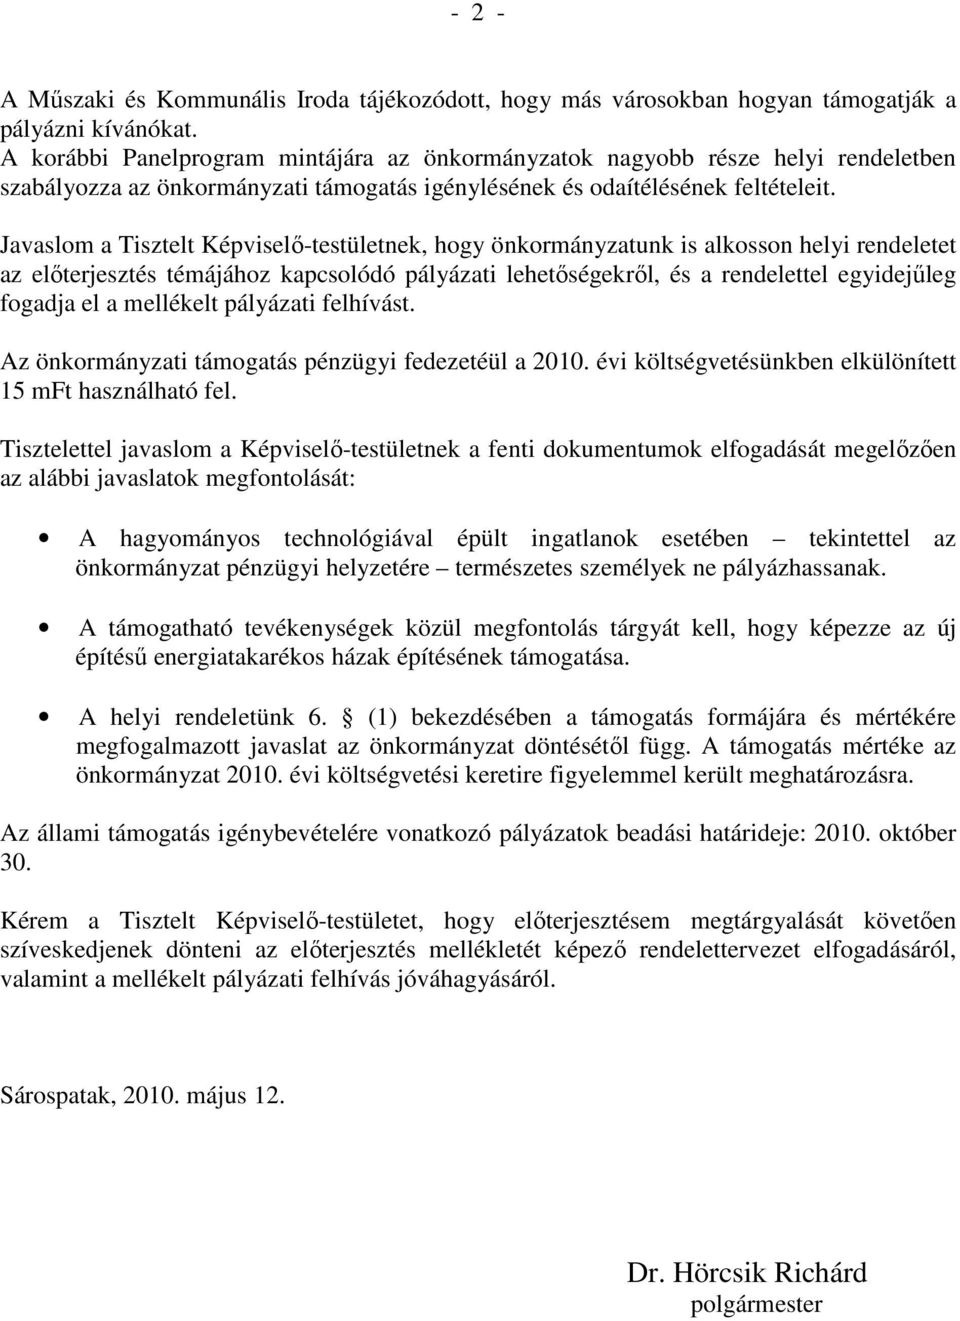 Javaslom a Tisztelt Képviselı-testületnek, hogy önkormányzatunk is alkosson helyi rendeletet az elıterjesztés témájához kapcsolódó pályázati lehetıségekrıl, és a rendelettel egyidejőleg fogadja el a